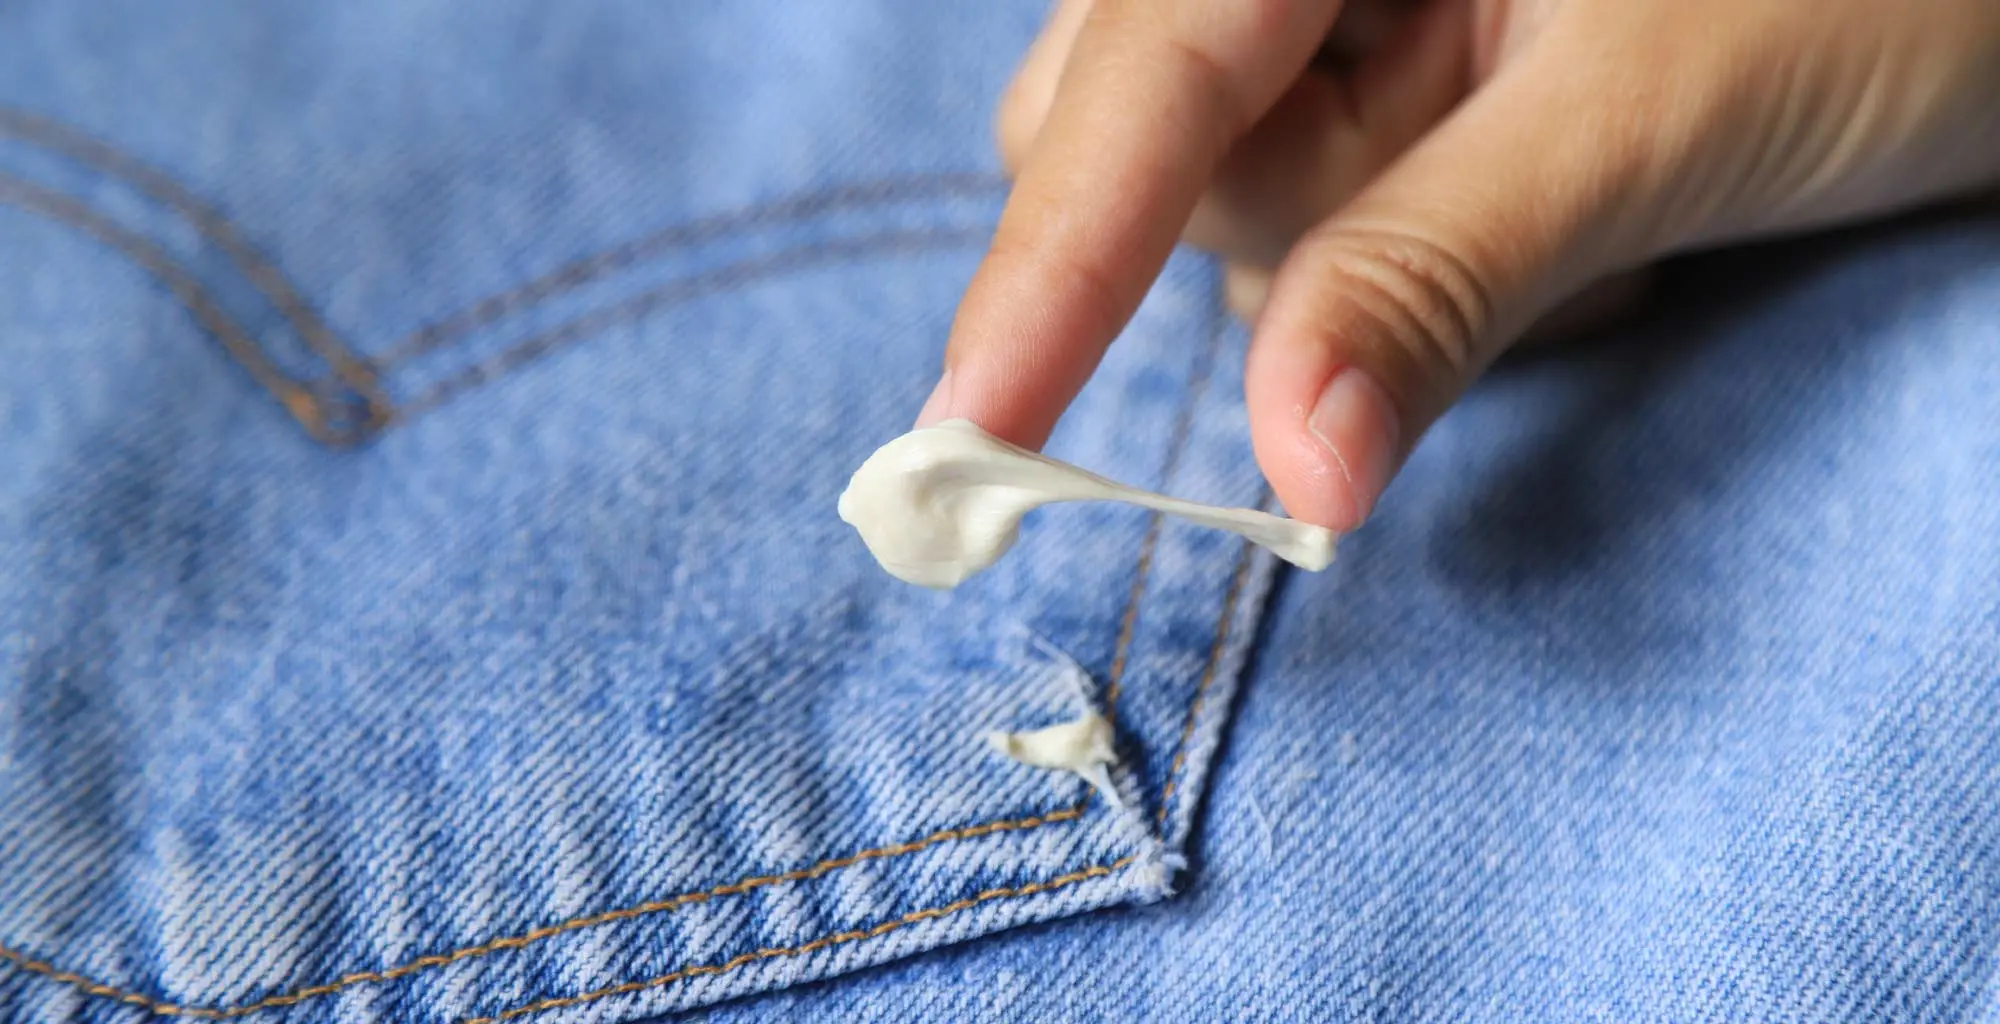 Una mano intentando despegar un chicle del bolsillo de un jean.